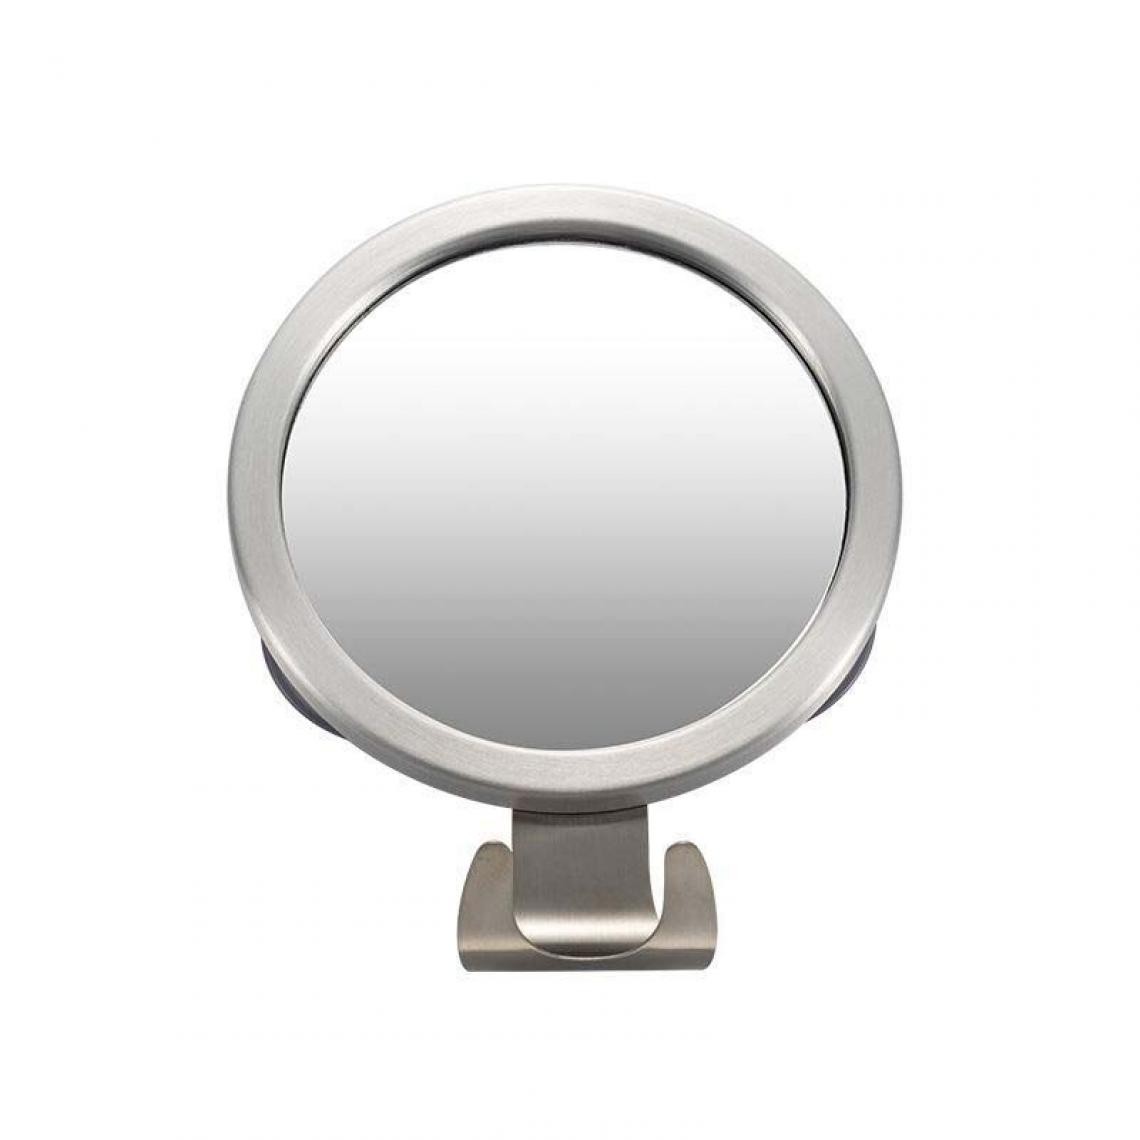 Universal - Idée salle de bains ronde antibrouillard miroir ventouse puissante salle de bains miroir de douche homme miroir de rasage avec porte-rasoir |(Argent) - Miroir de salle de bain